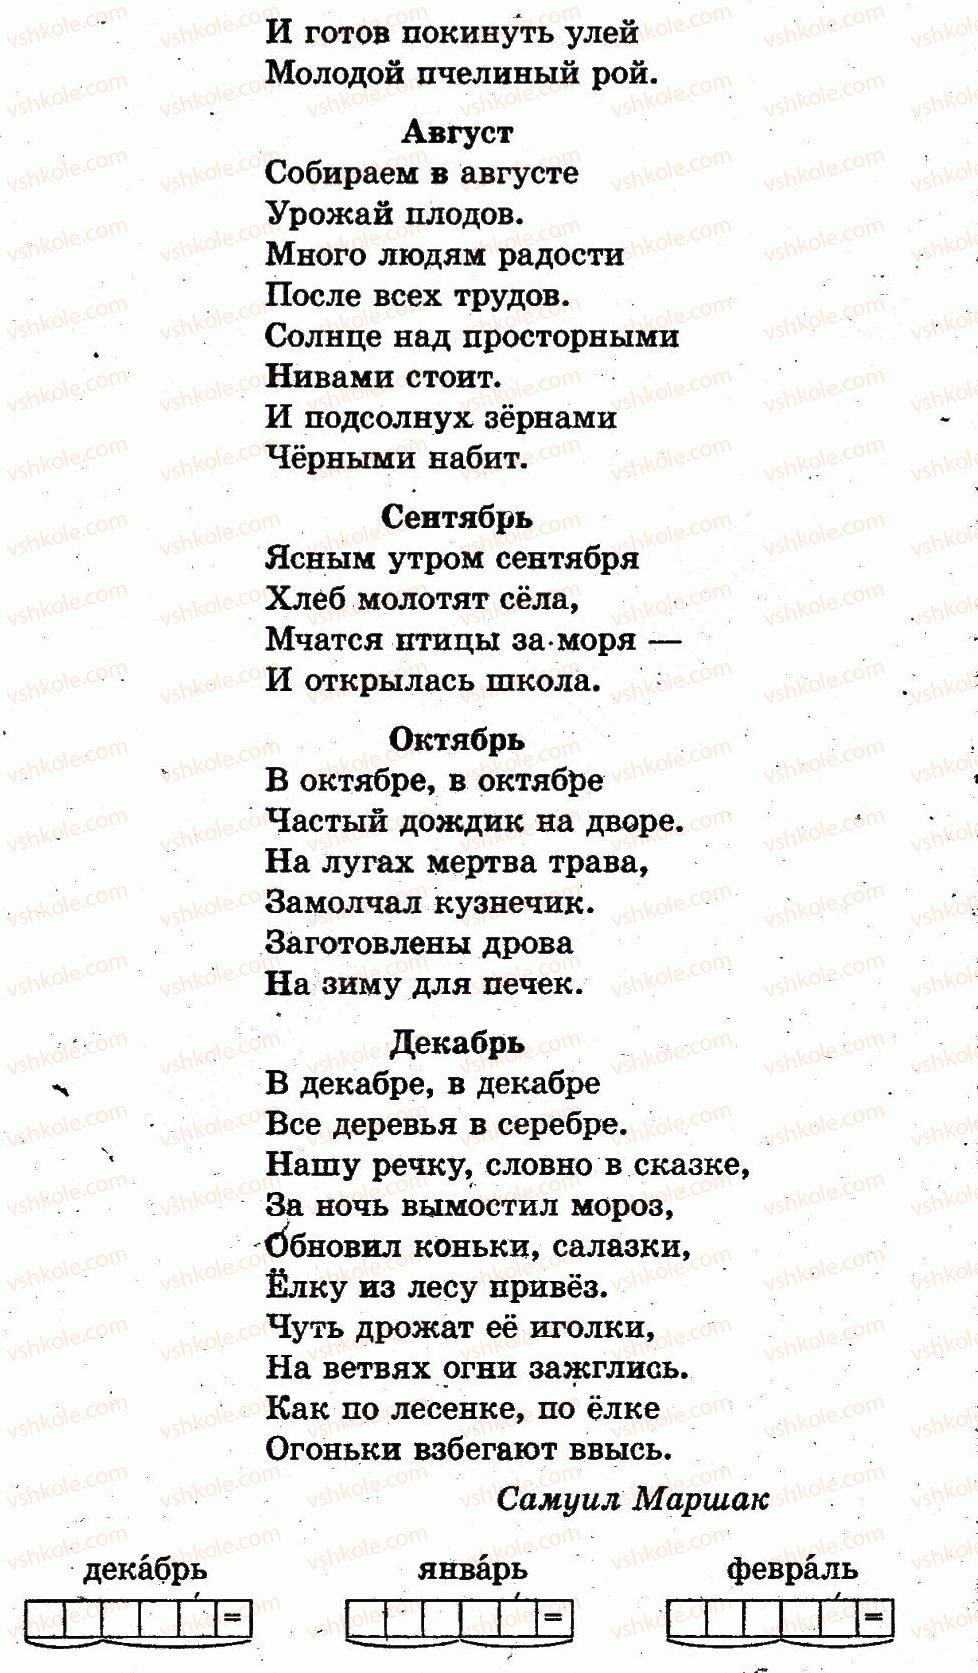 1-russkij-yazyk-in-lapshina-nn-zorka-2012--vremya-sutki-страница84-rnd2035.jpg